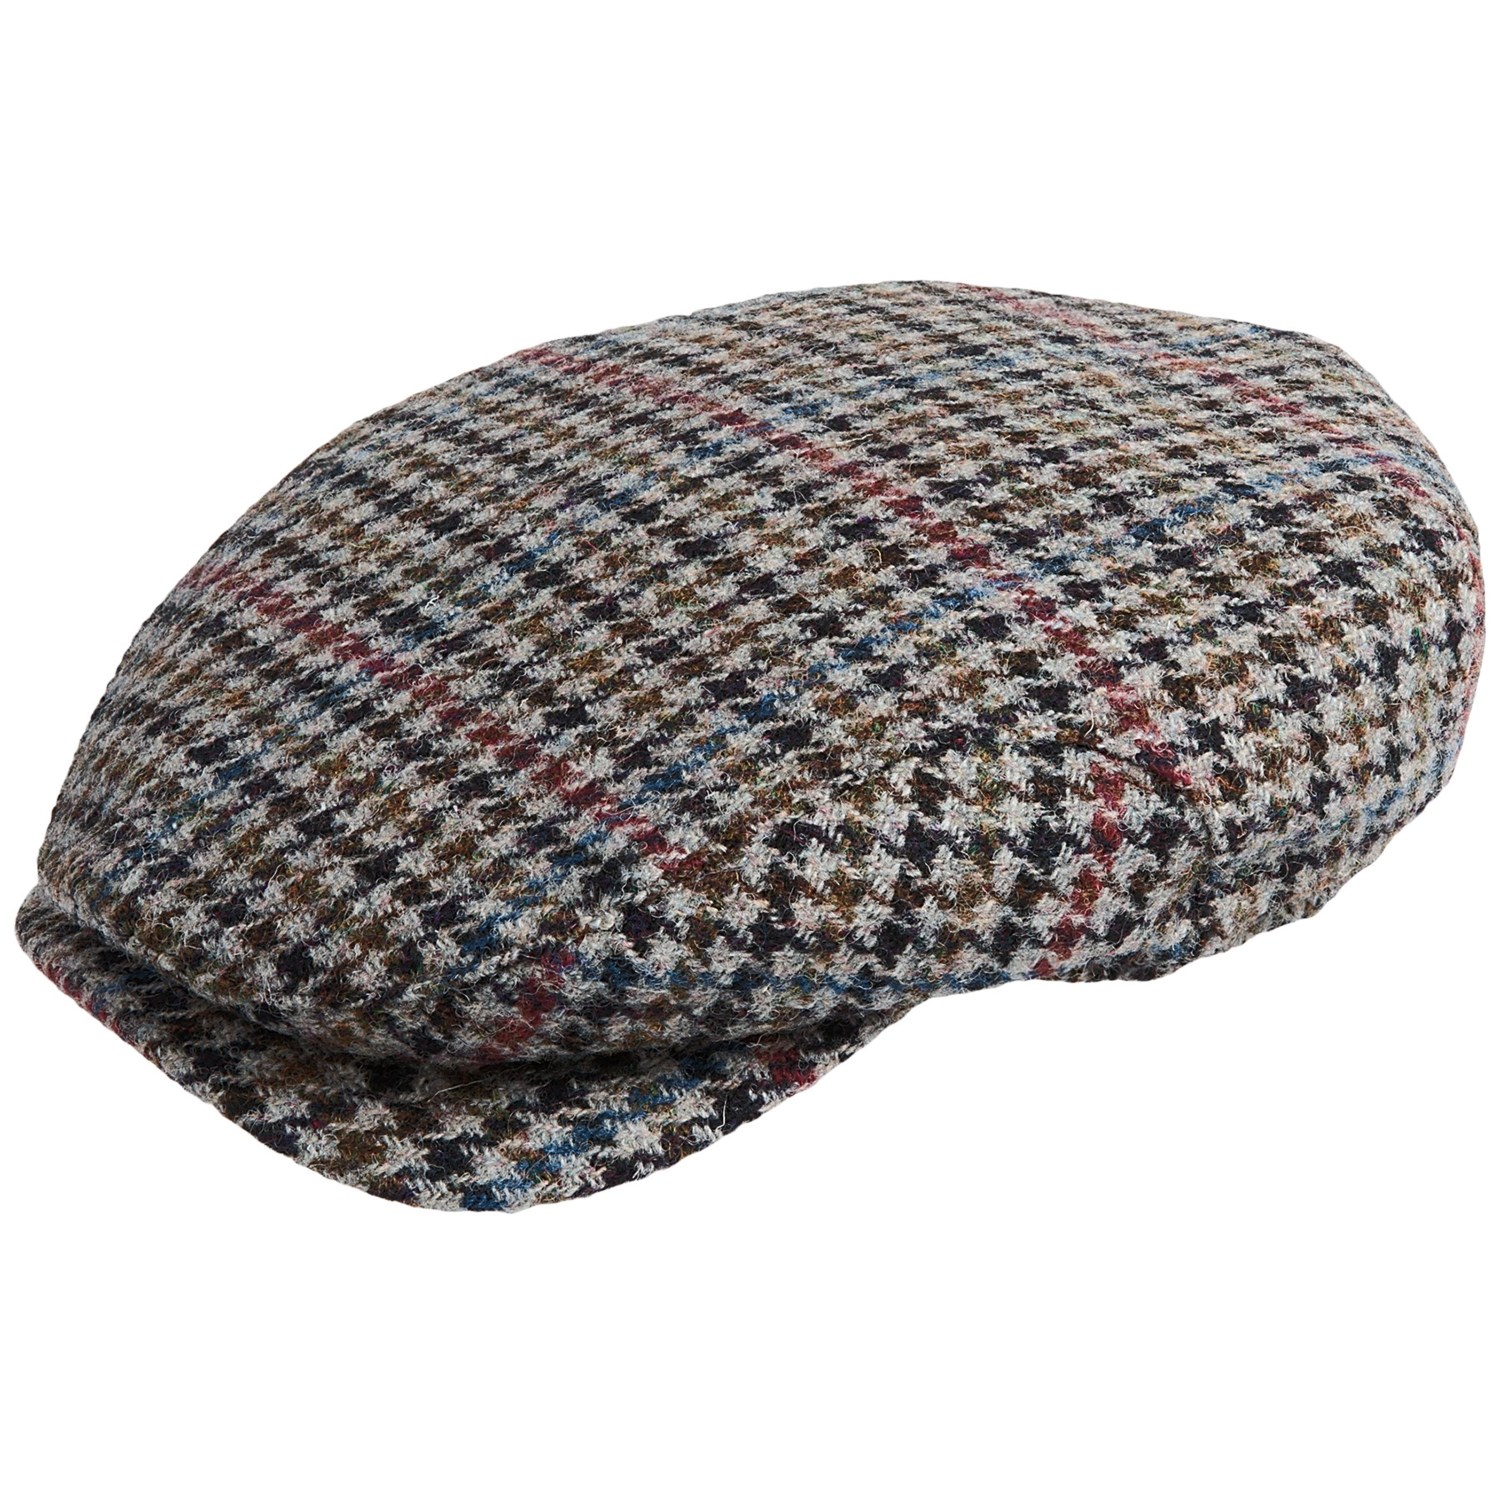 Wigens Wool Houndstooth Harris Tweed Ivy Cap (For Men) 8246Y - Save 54%